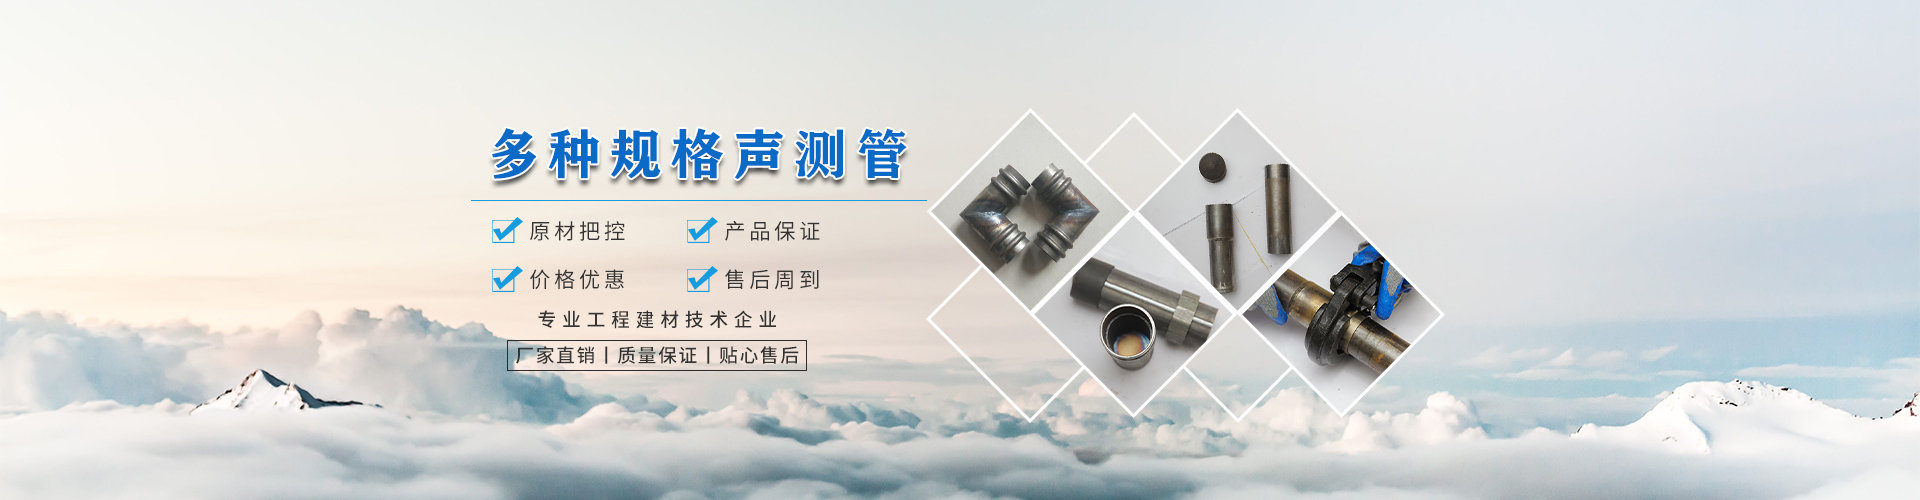 聲測管_聲測管廠家_聲測管現貨-滄州市惠世達鋼鐵有限公司